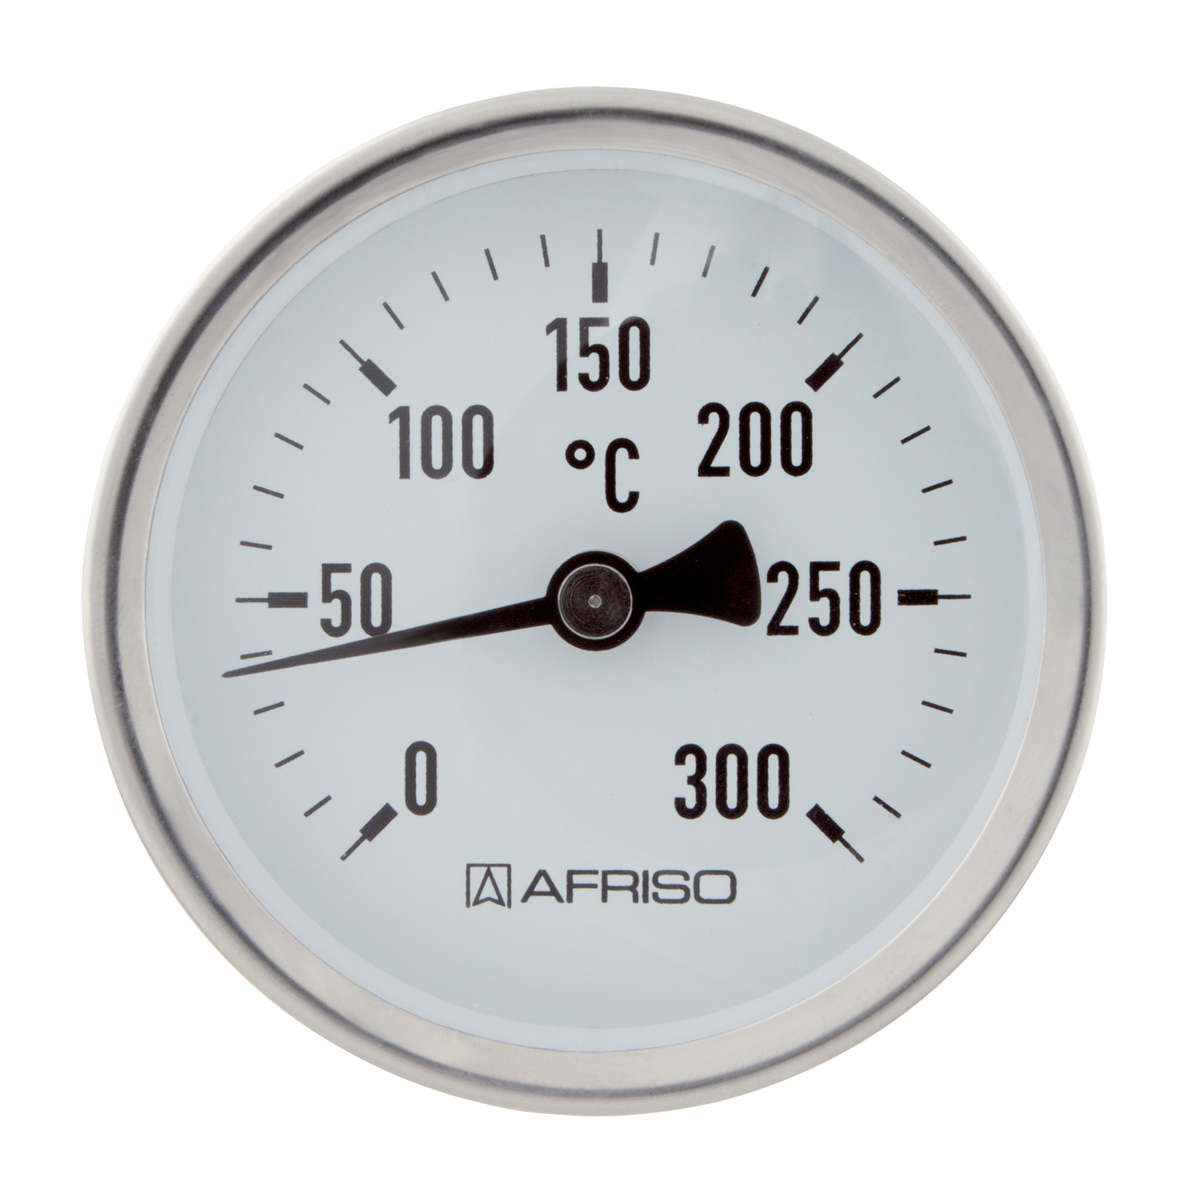 AFRISO Rauchgasthermometer RT 80 0/300C 150mm verstellbarer Konus 8-12mm Kl.2 VOR 90730 90740 object_image_71864imagemain_de